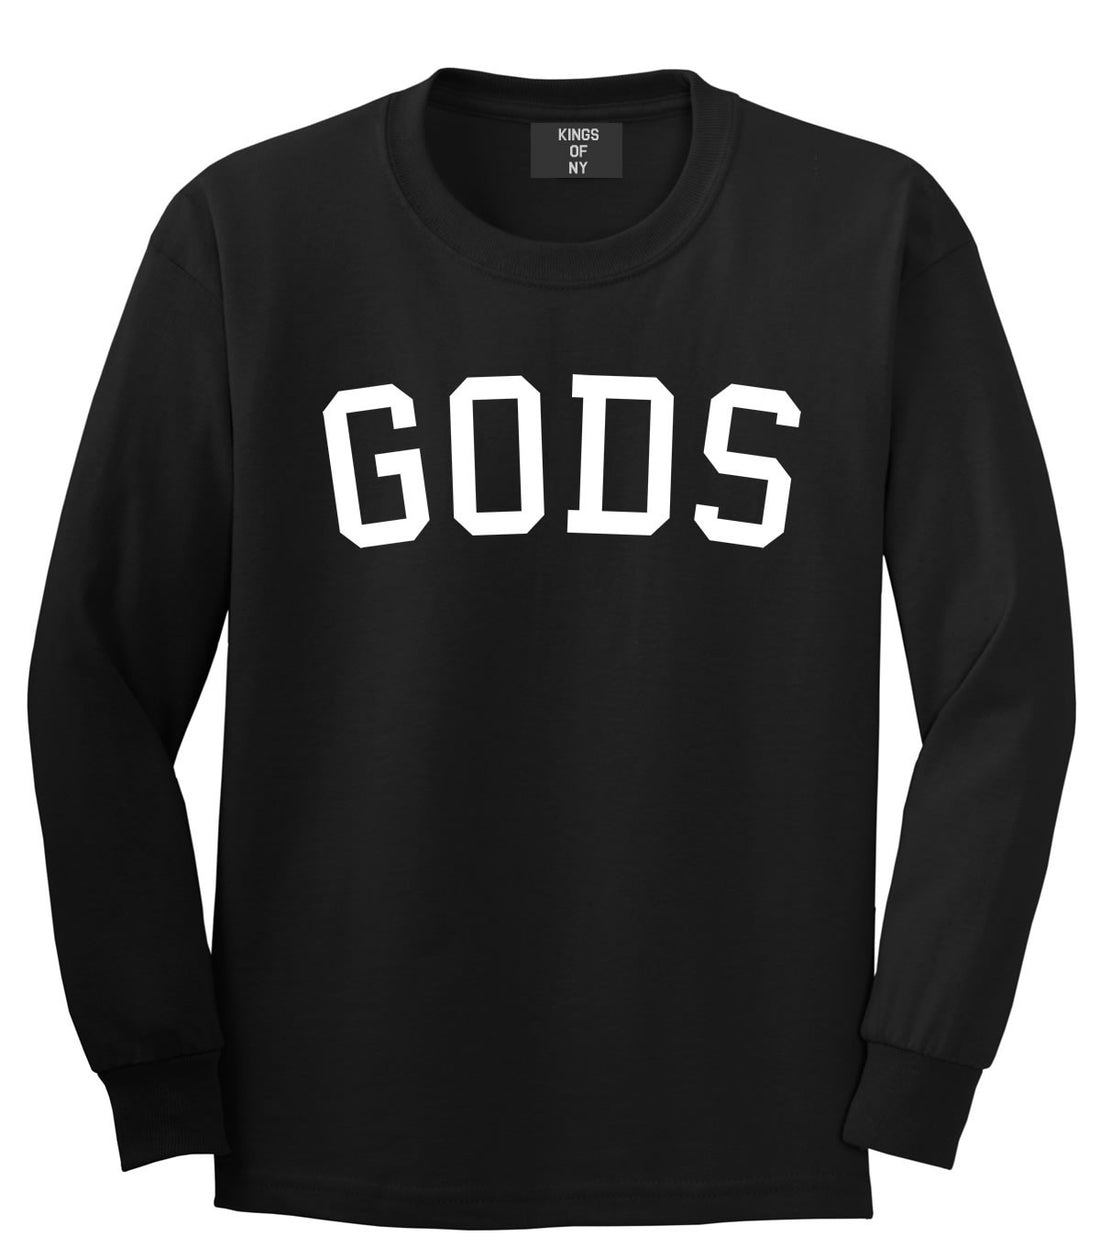 Kings Of NY Gods Long Sleeve T-Shirt in Black